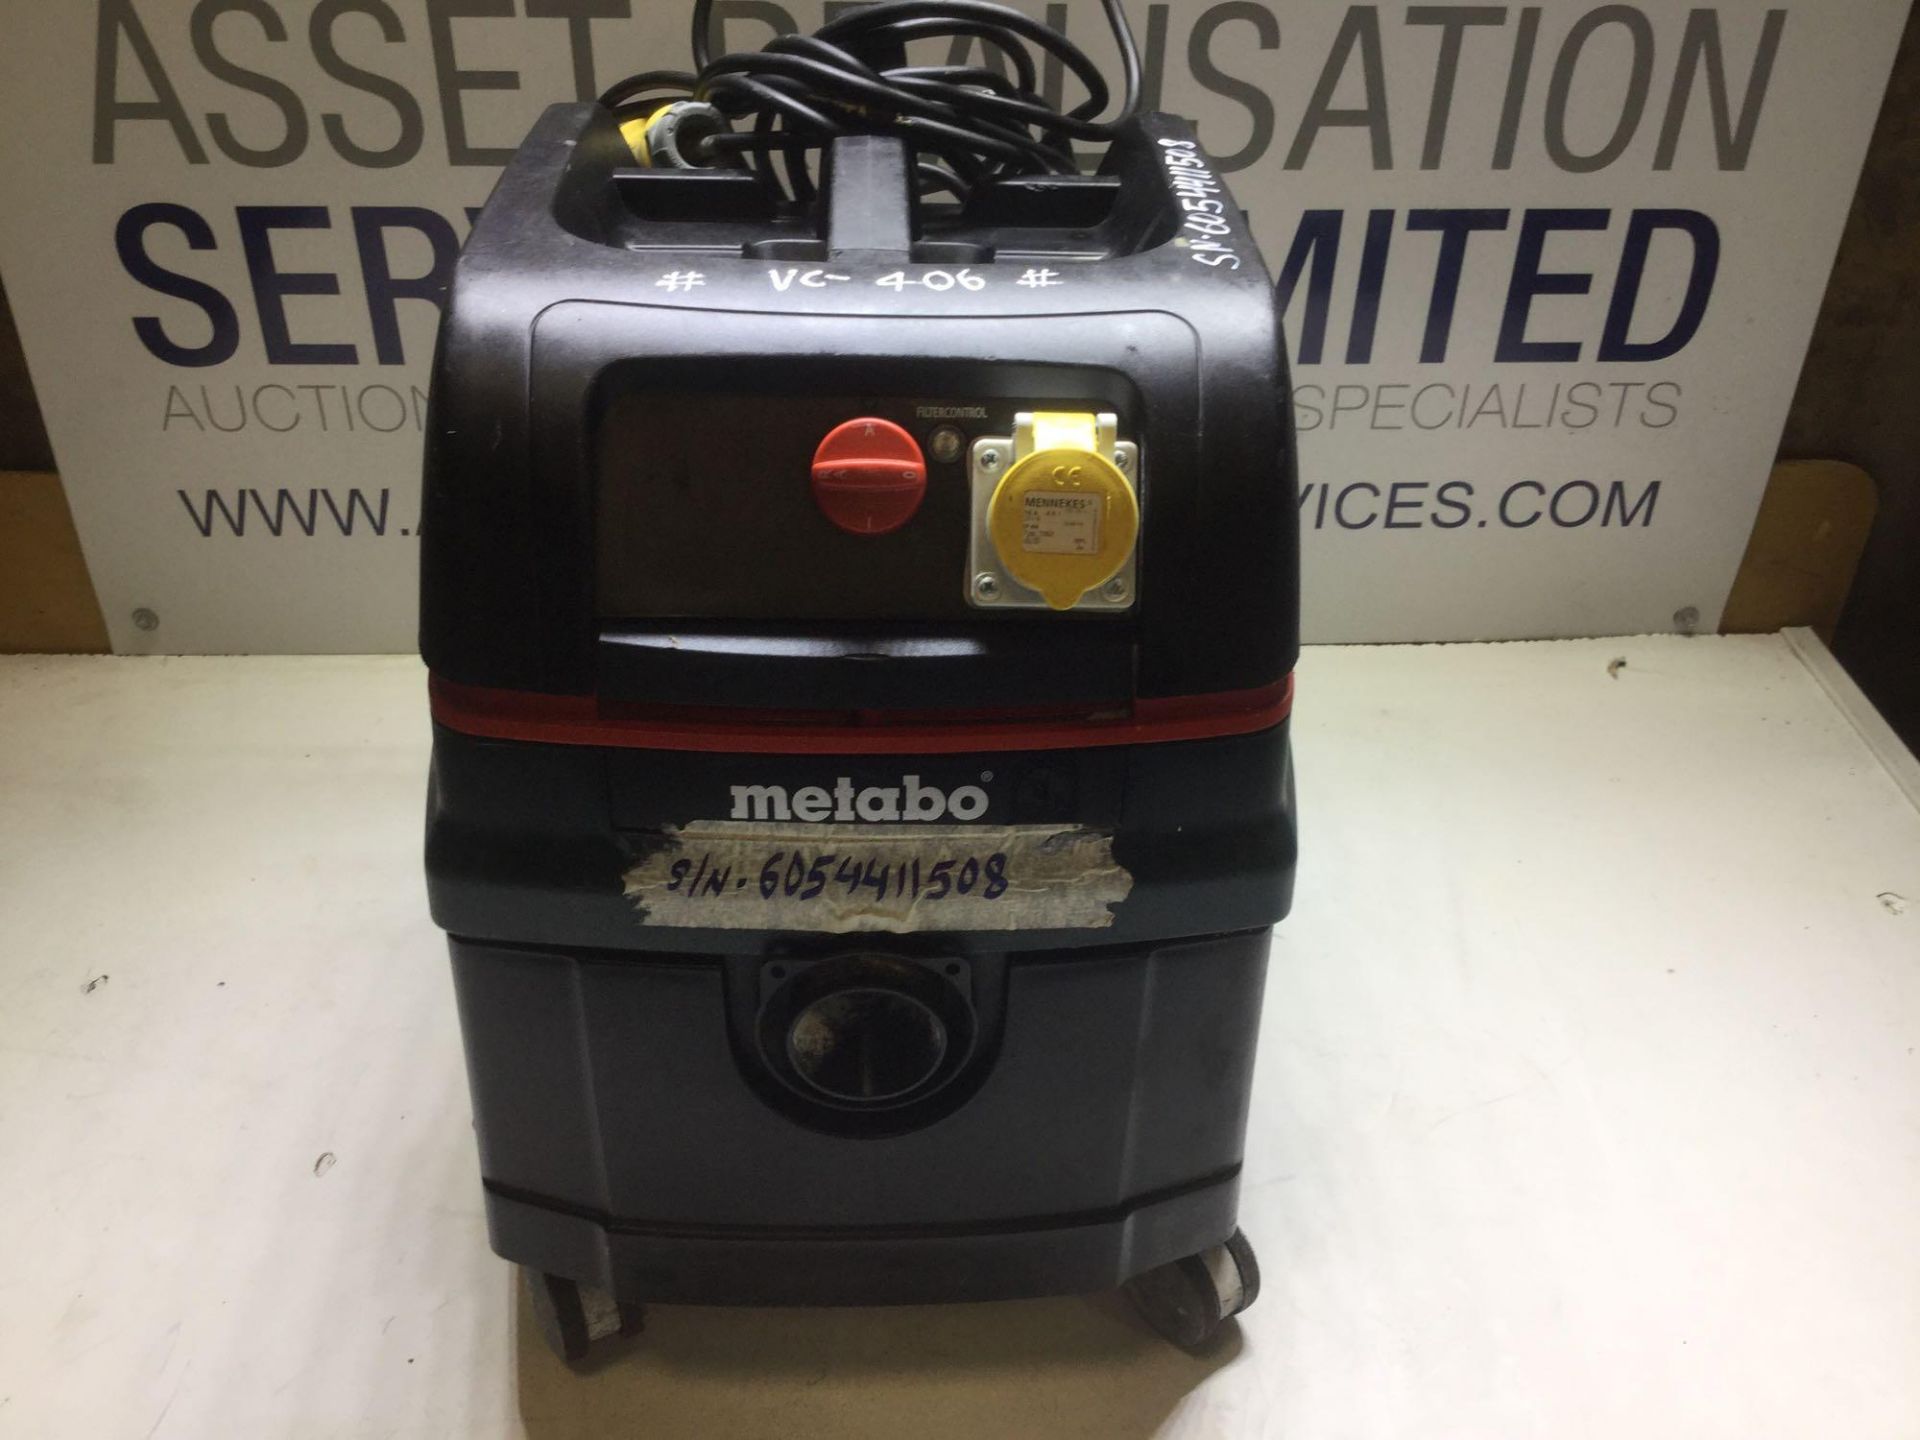 Metabo ASR 25 L SC Vacuum Cleaner With 110v Socket - Image 2 of 4